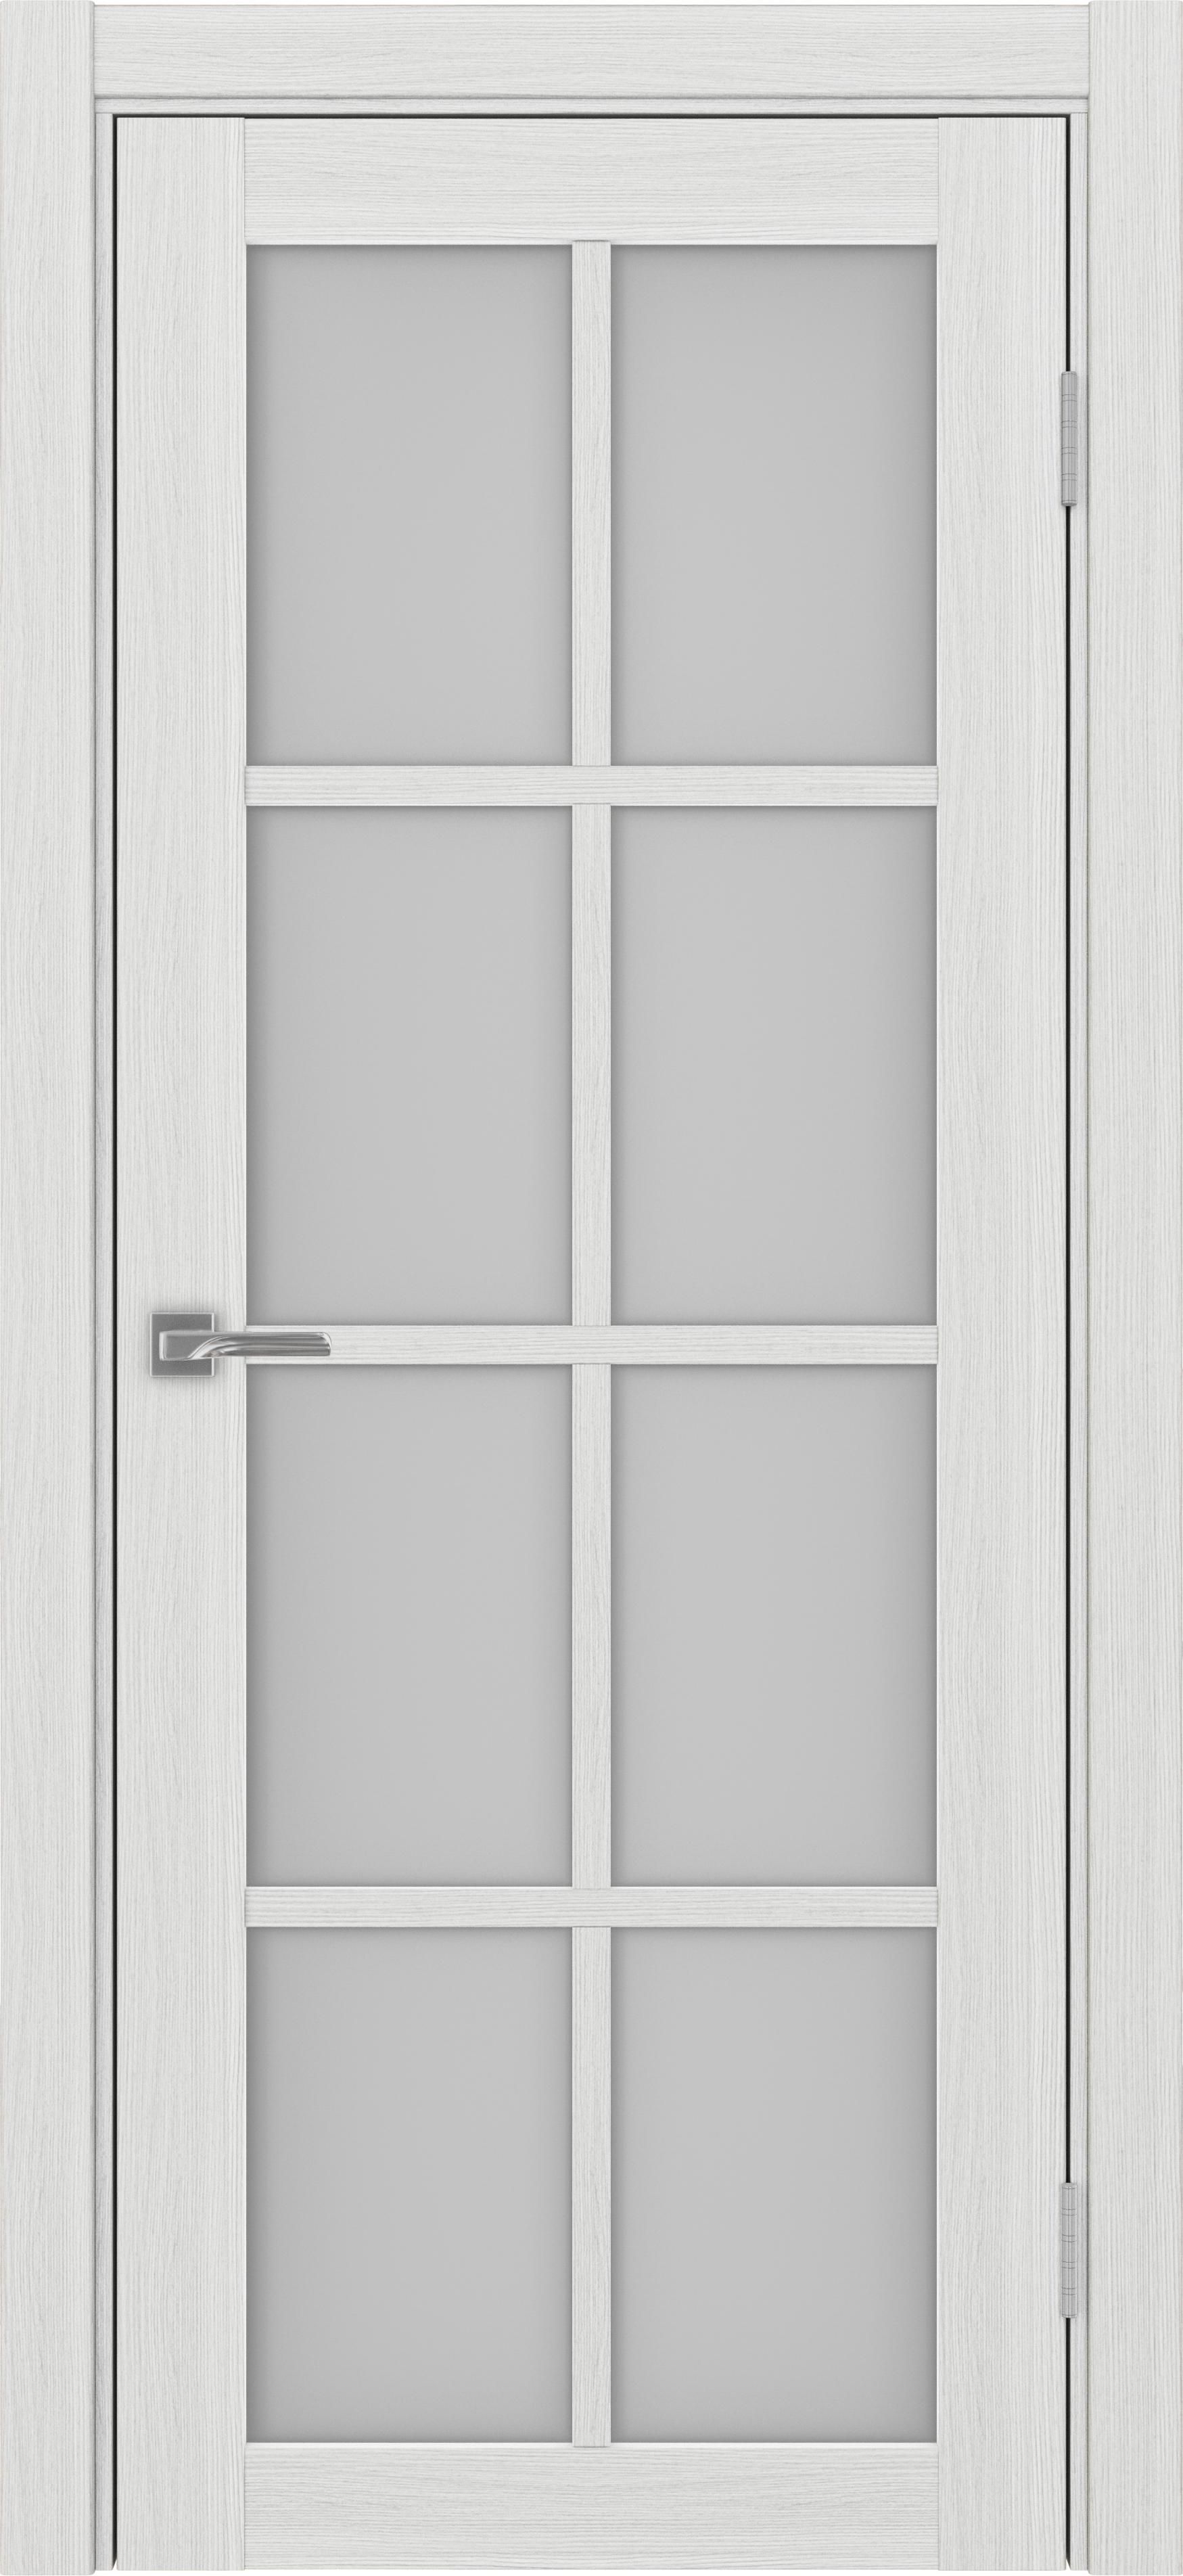 Межкомнатная дверь «Турин 541.2222 Ясень серебристый» стекло сатин